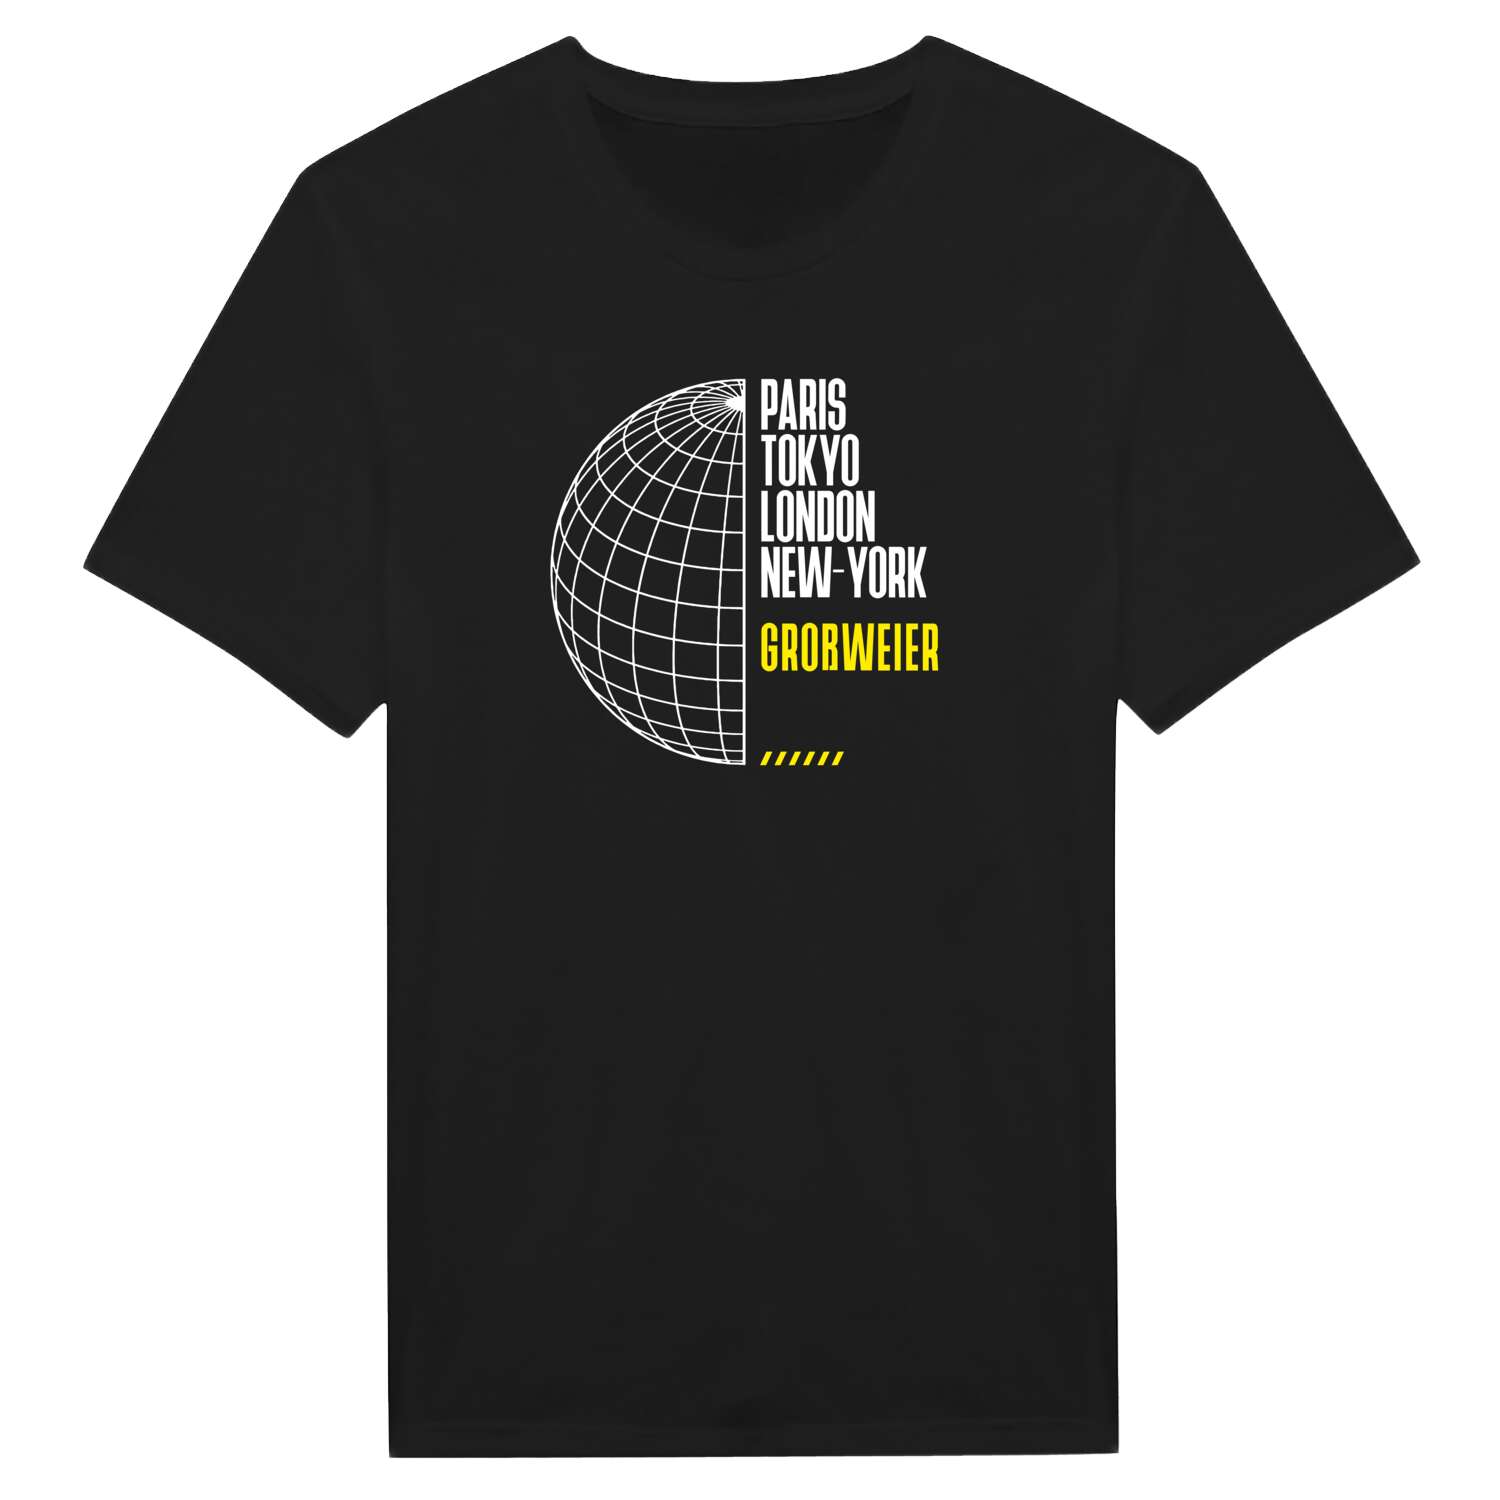 Großweier T-Shirt »Paris Tokyo London«